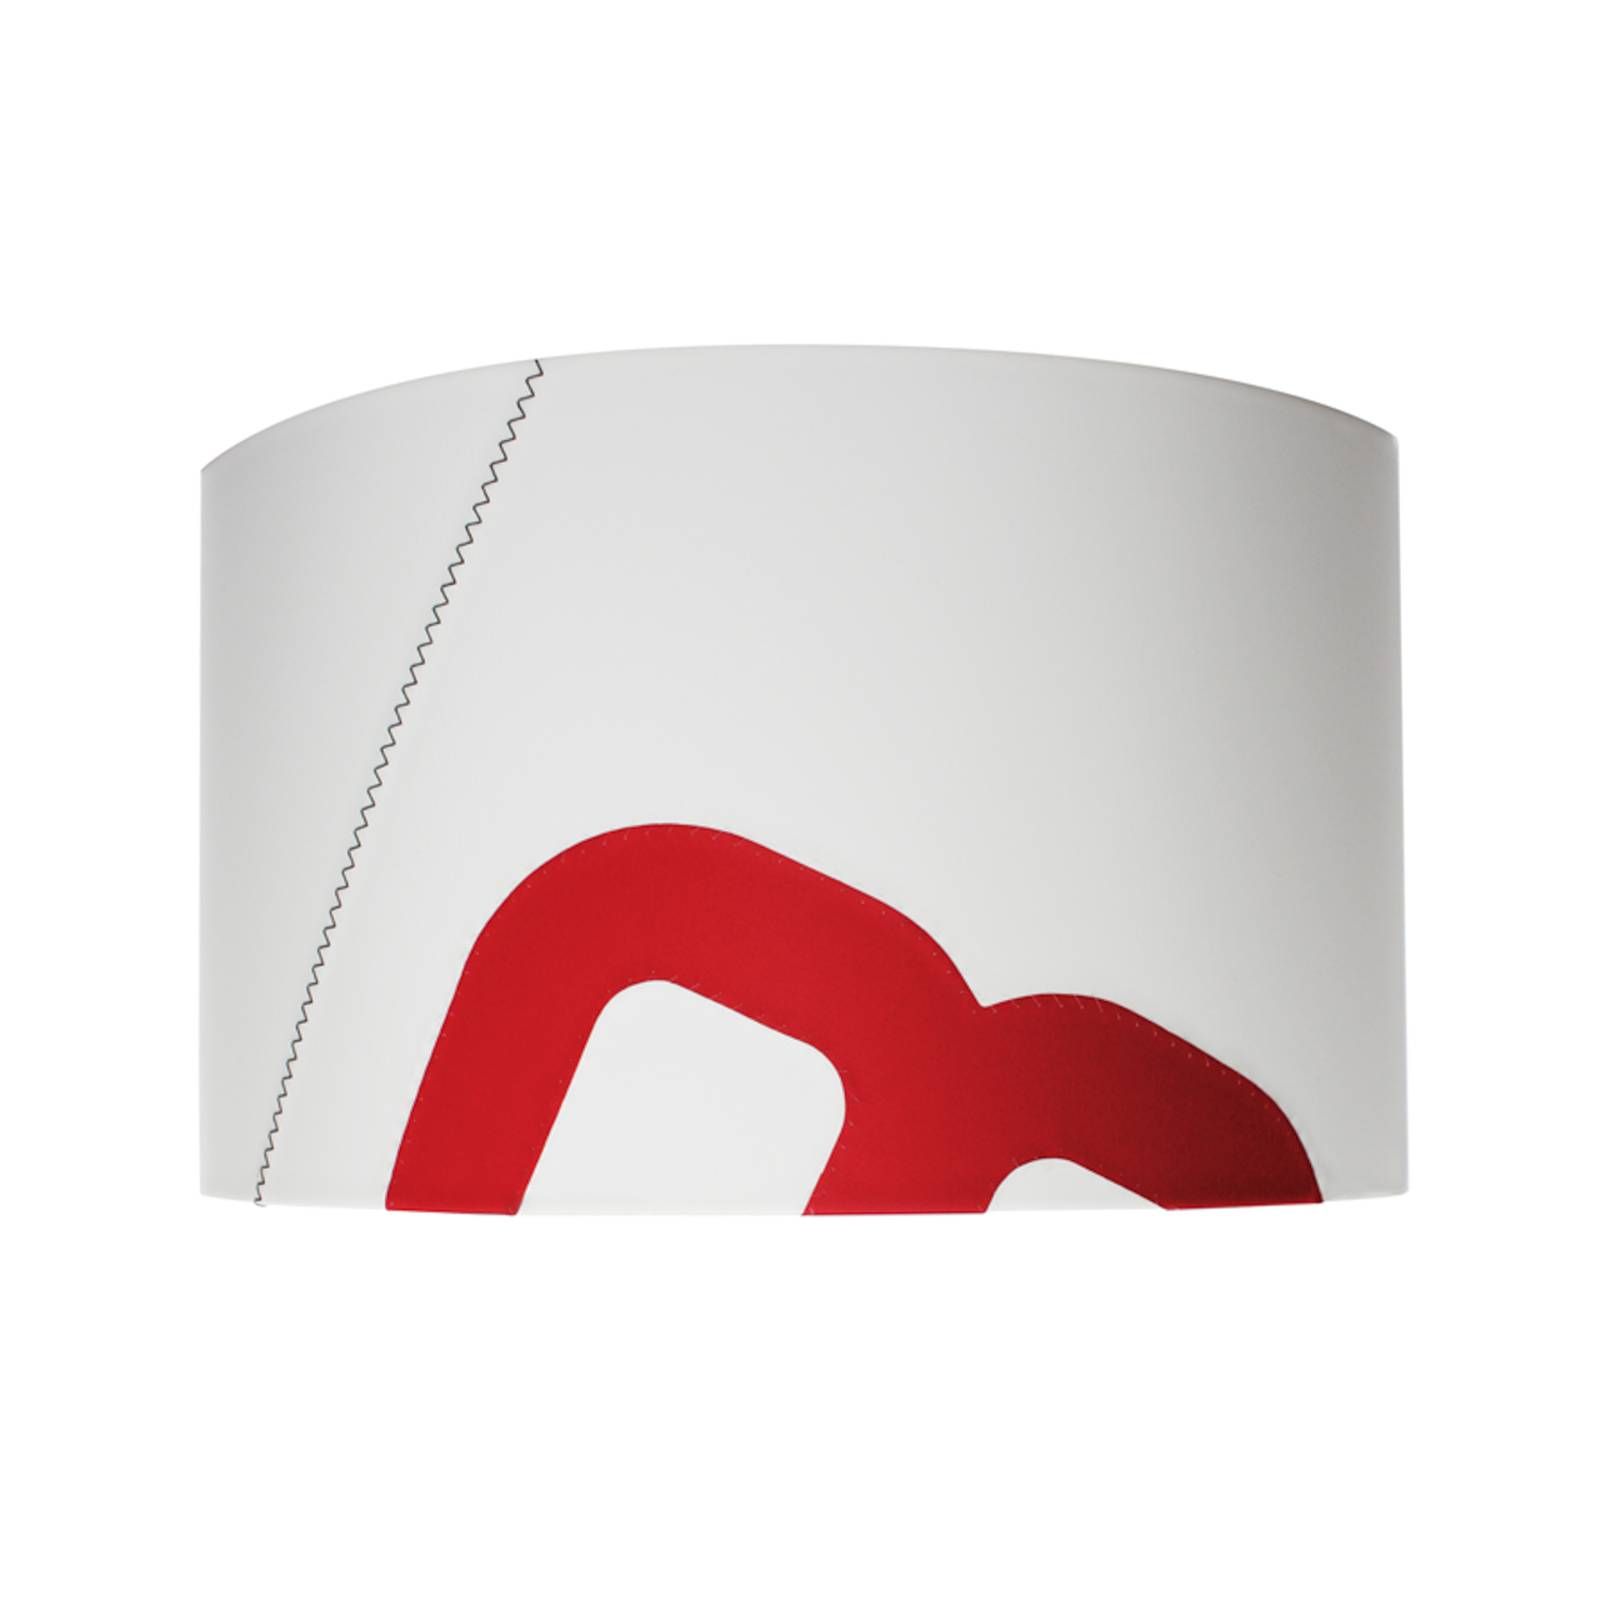 Image of Applique Port d’attache en toile, blanc/rouge 705632056004